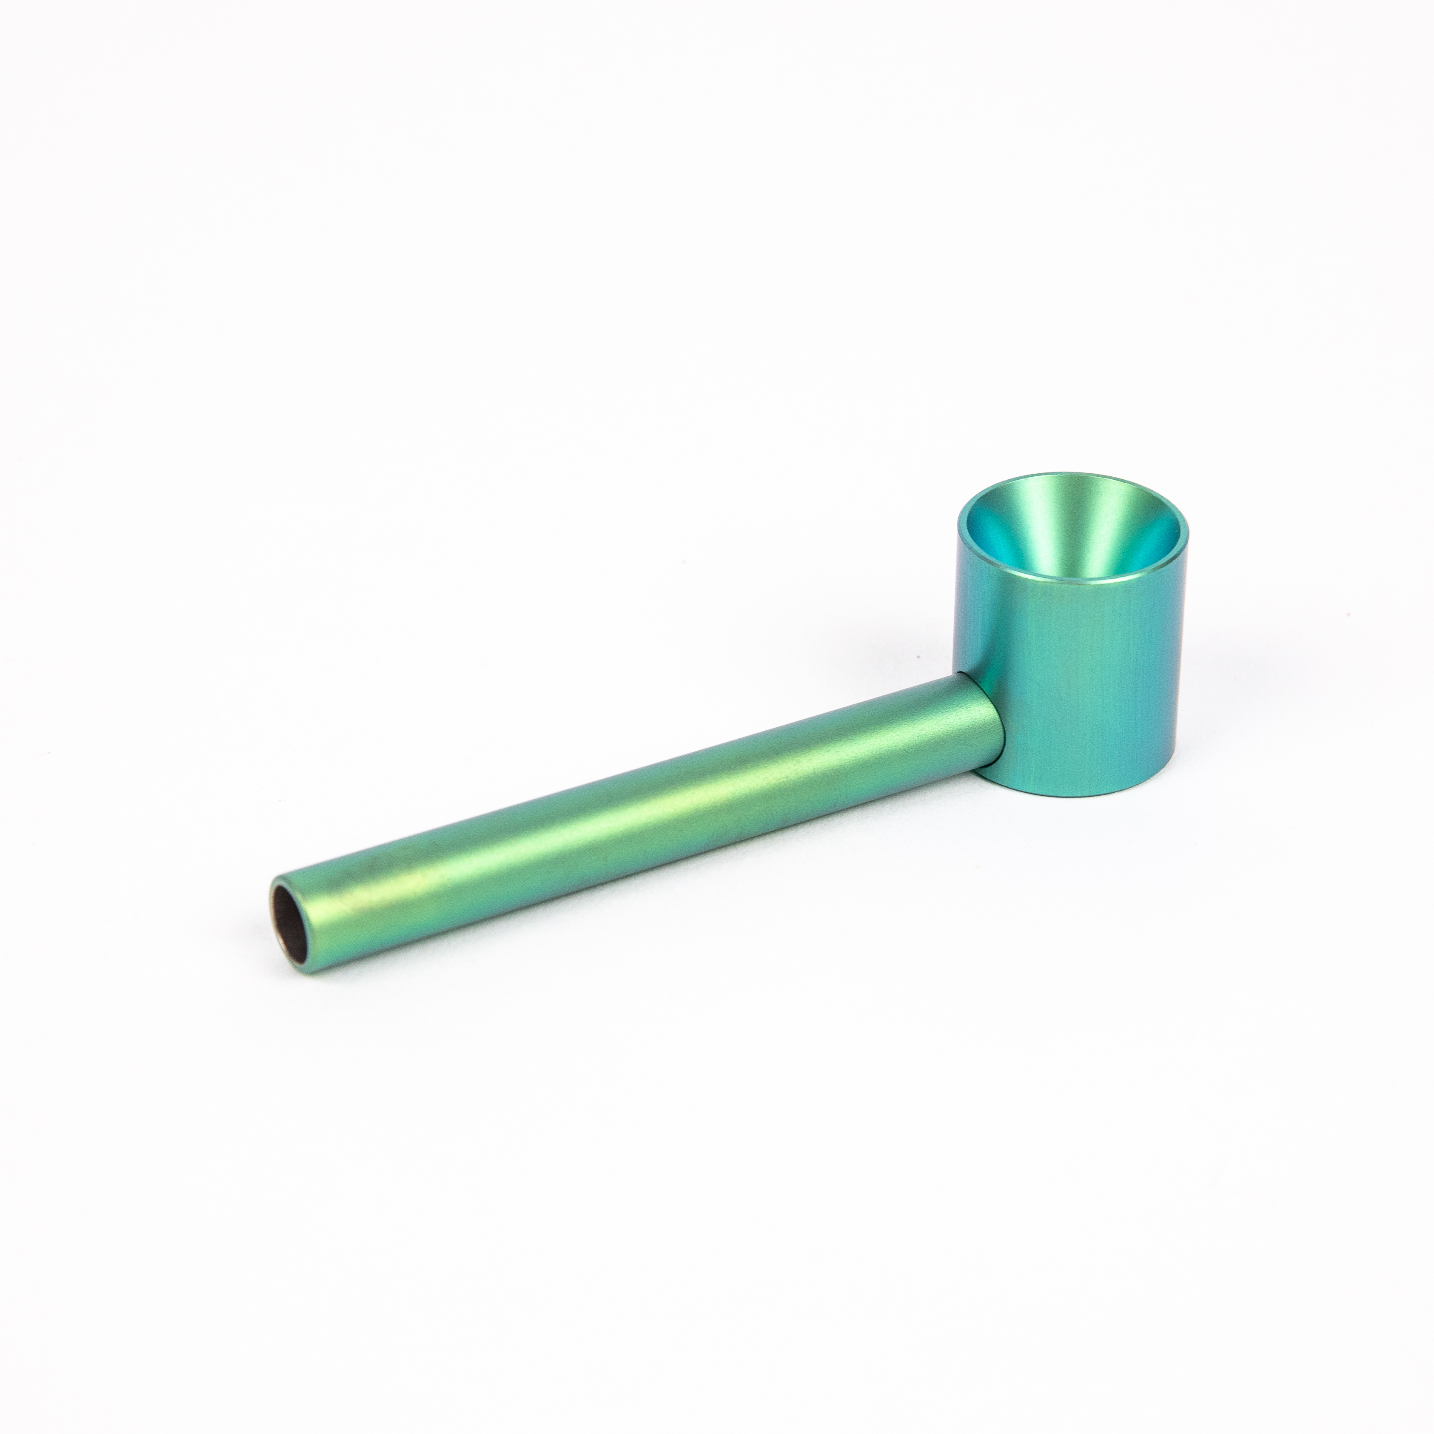 Smokey Pipe – Electric Green